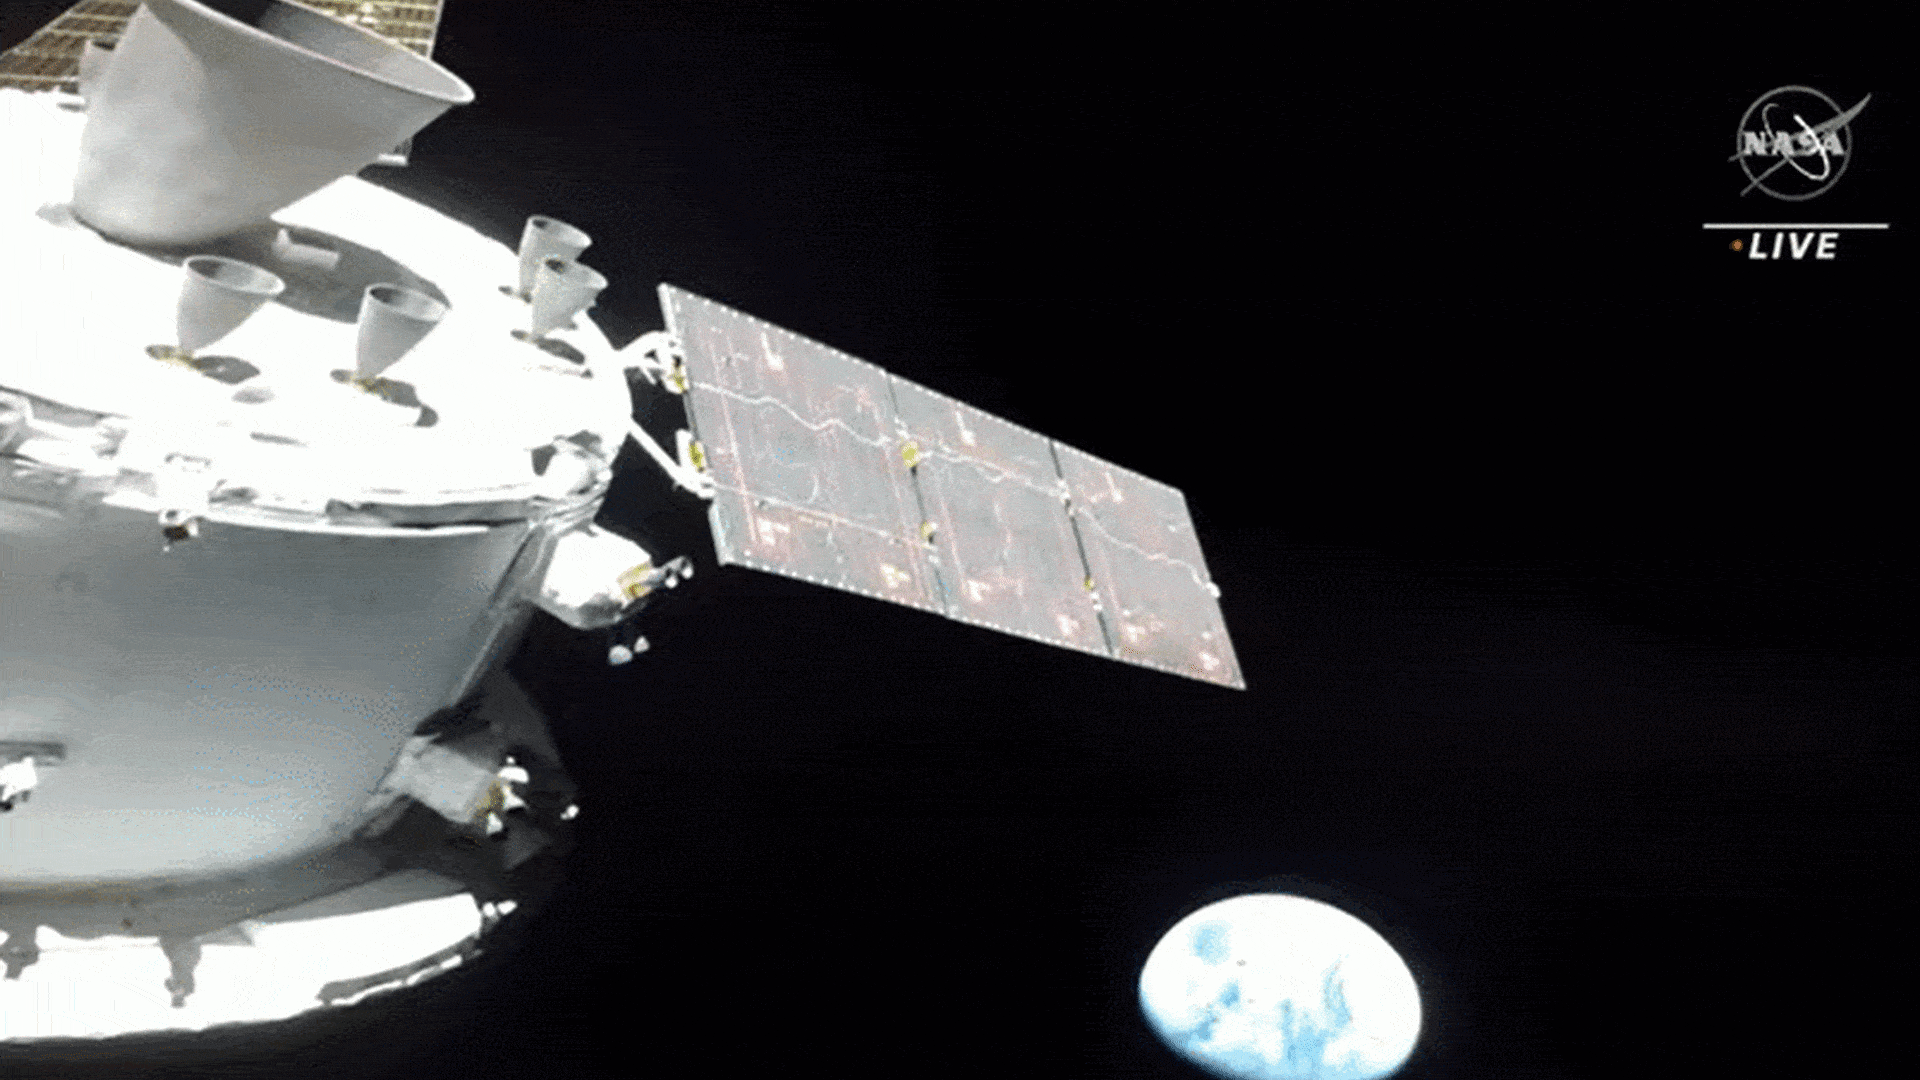 नासा का आर्टेमिस 1 मिशन सफल प्रक्षेपण के बाद चंद्रमा के लिए रवाना हुआ